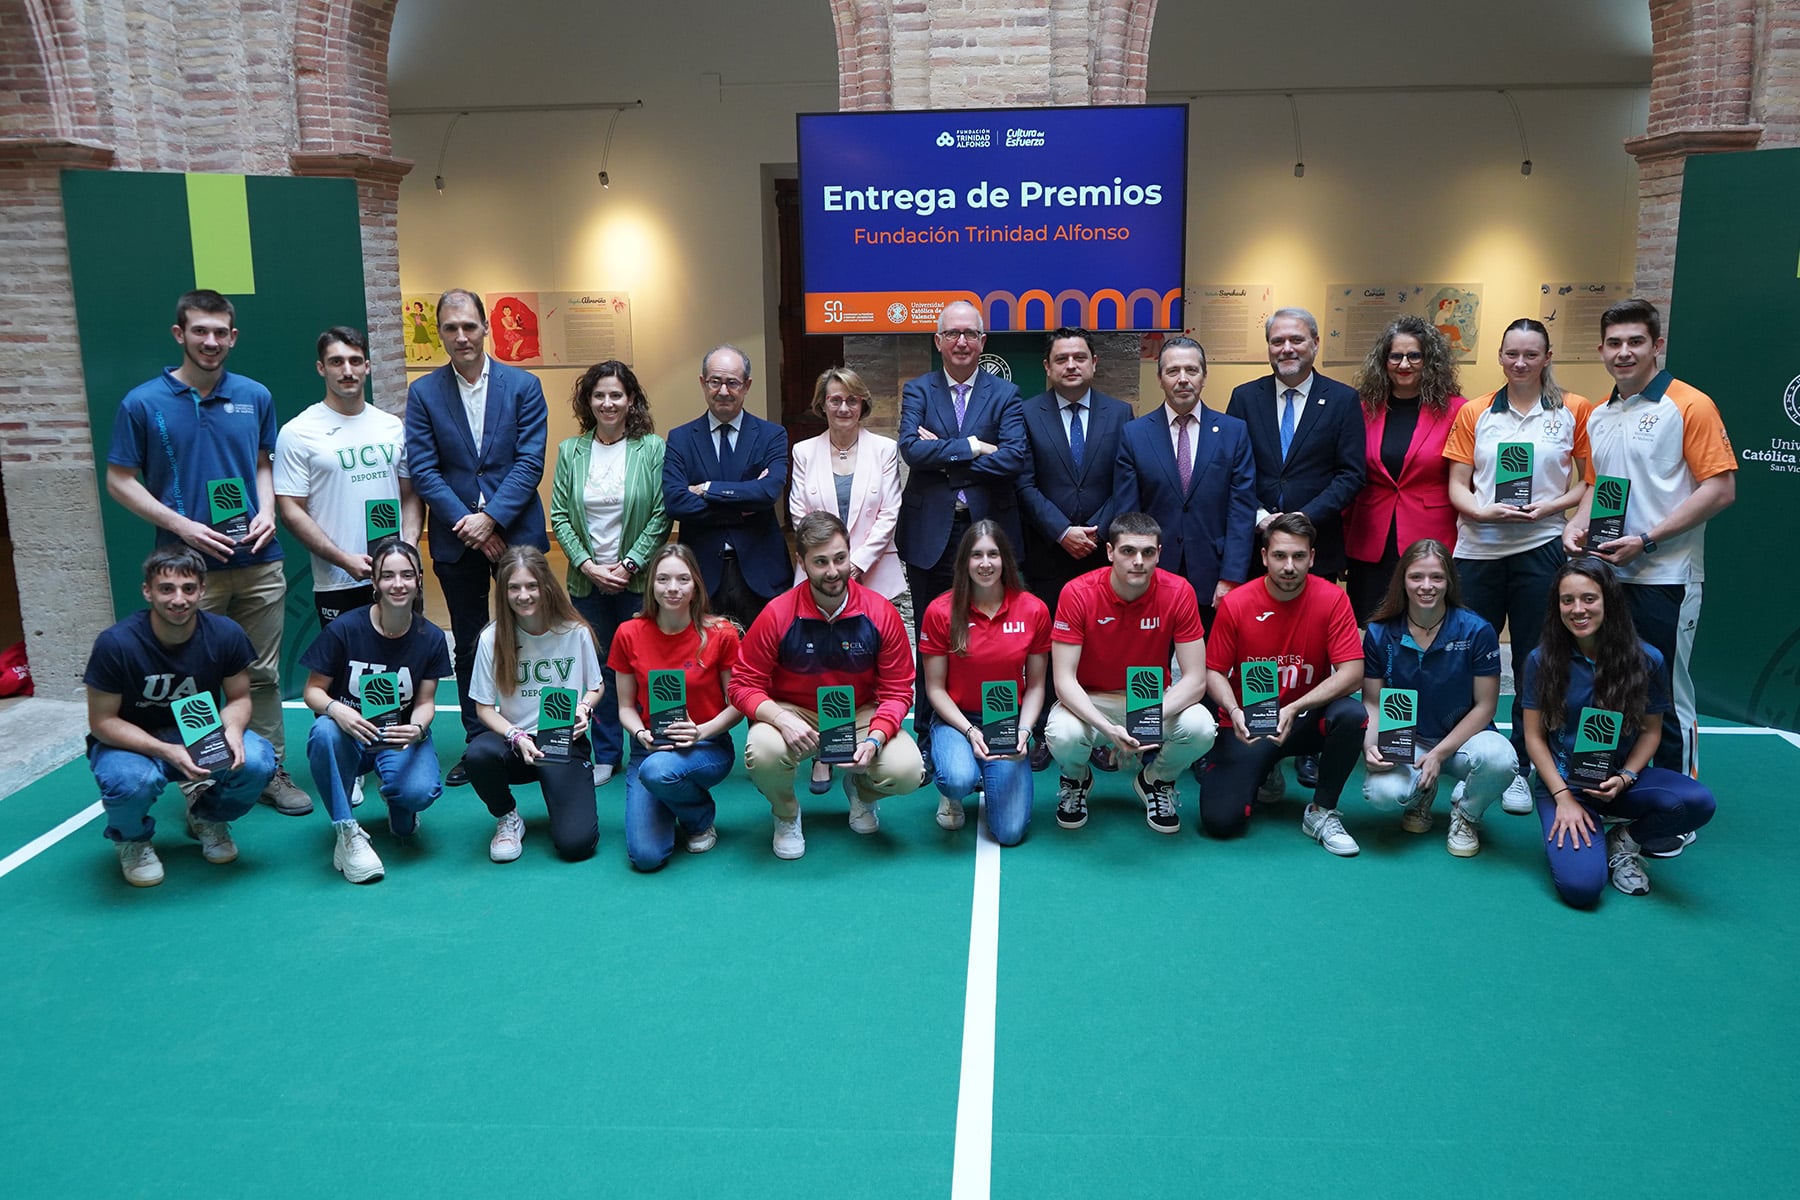 Las universidades de la Comunitat Valenciana y la Fundación Trinidad Alfonso vuelven a unir sus fuerzas en UniEsport 2024